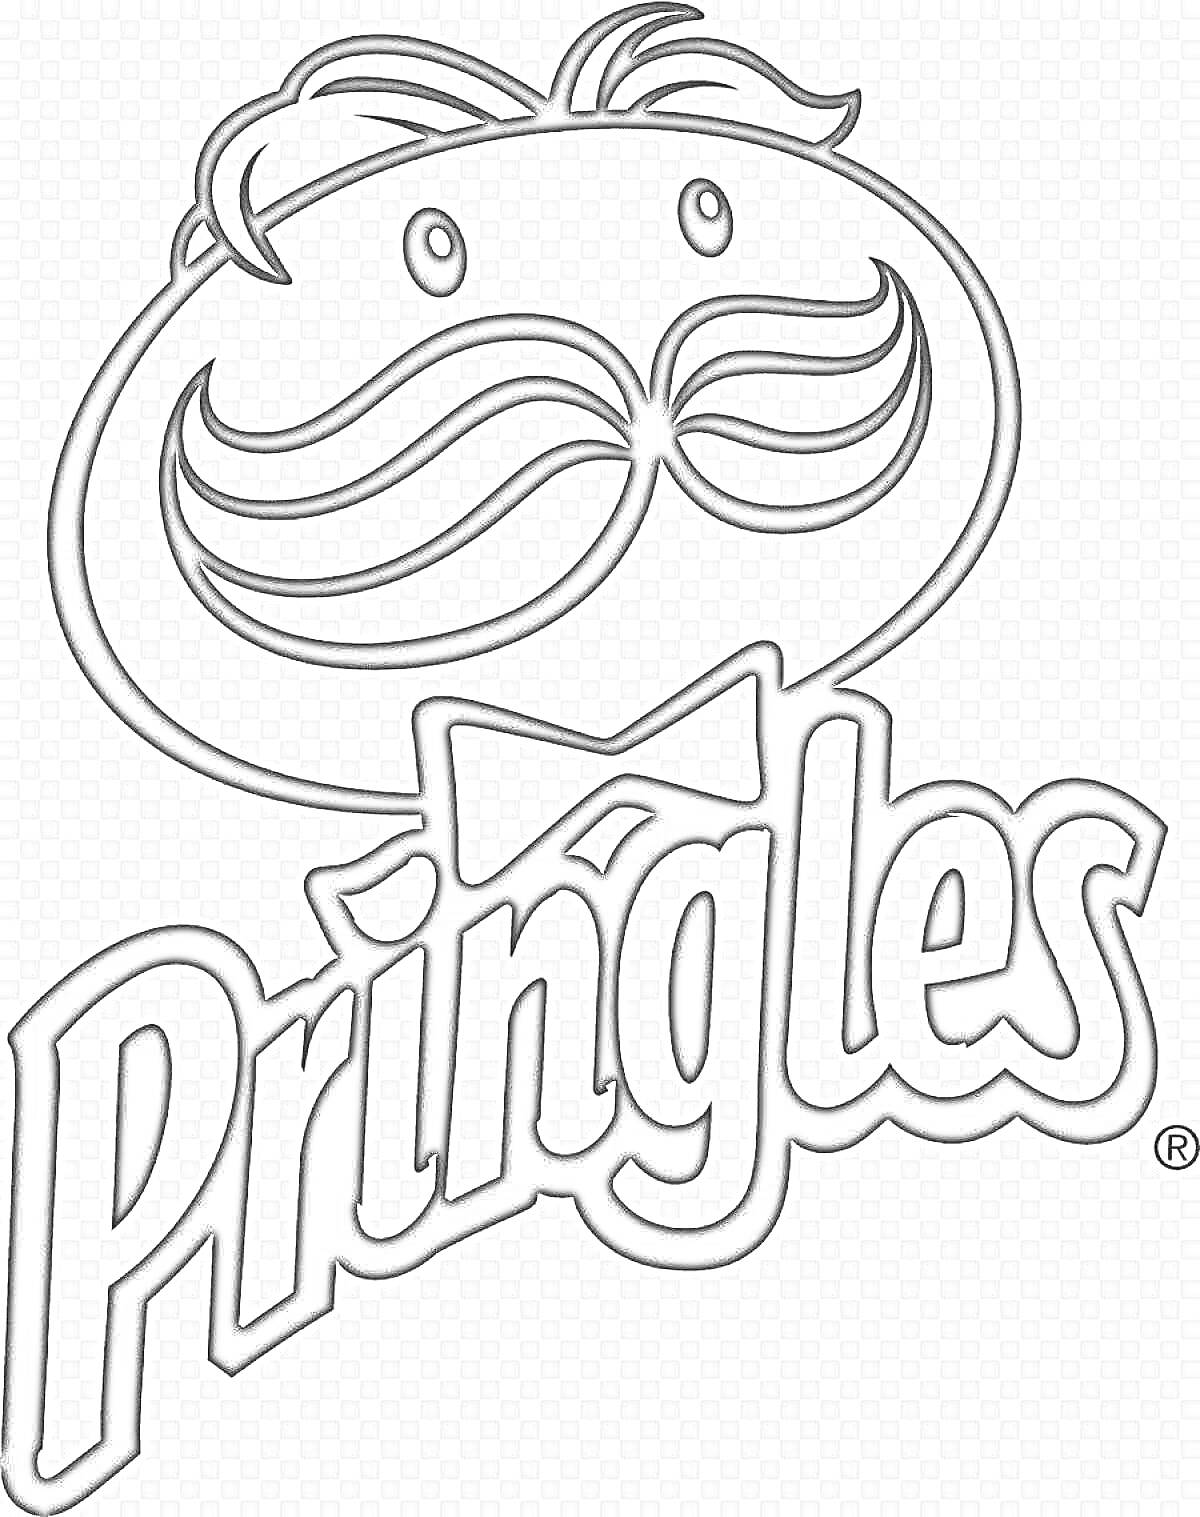 Раскраска Логотип Pringles с изображением мужчины с усами и бабочкой, надпись 